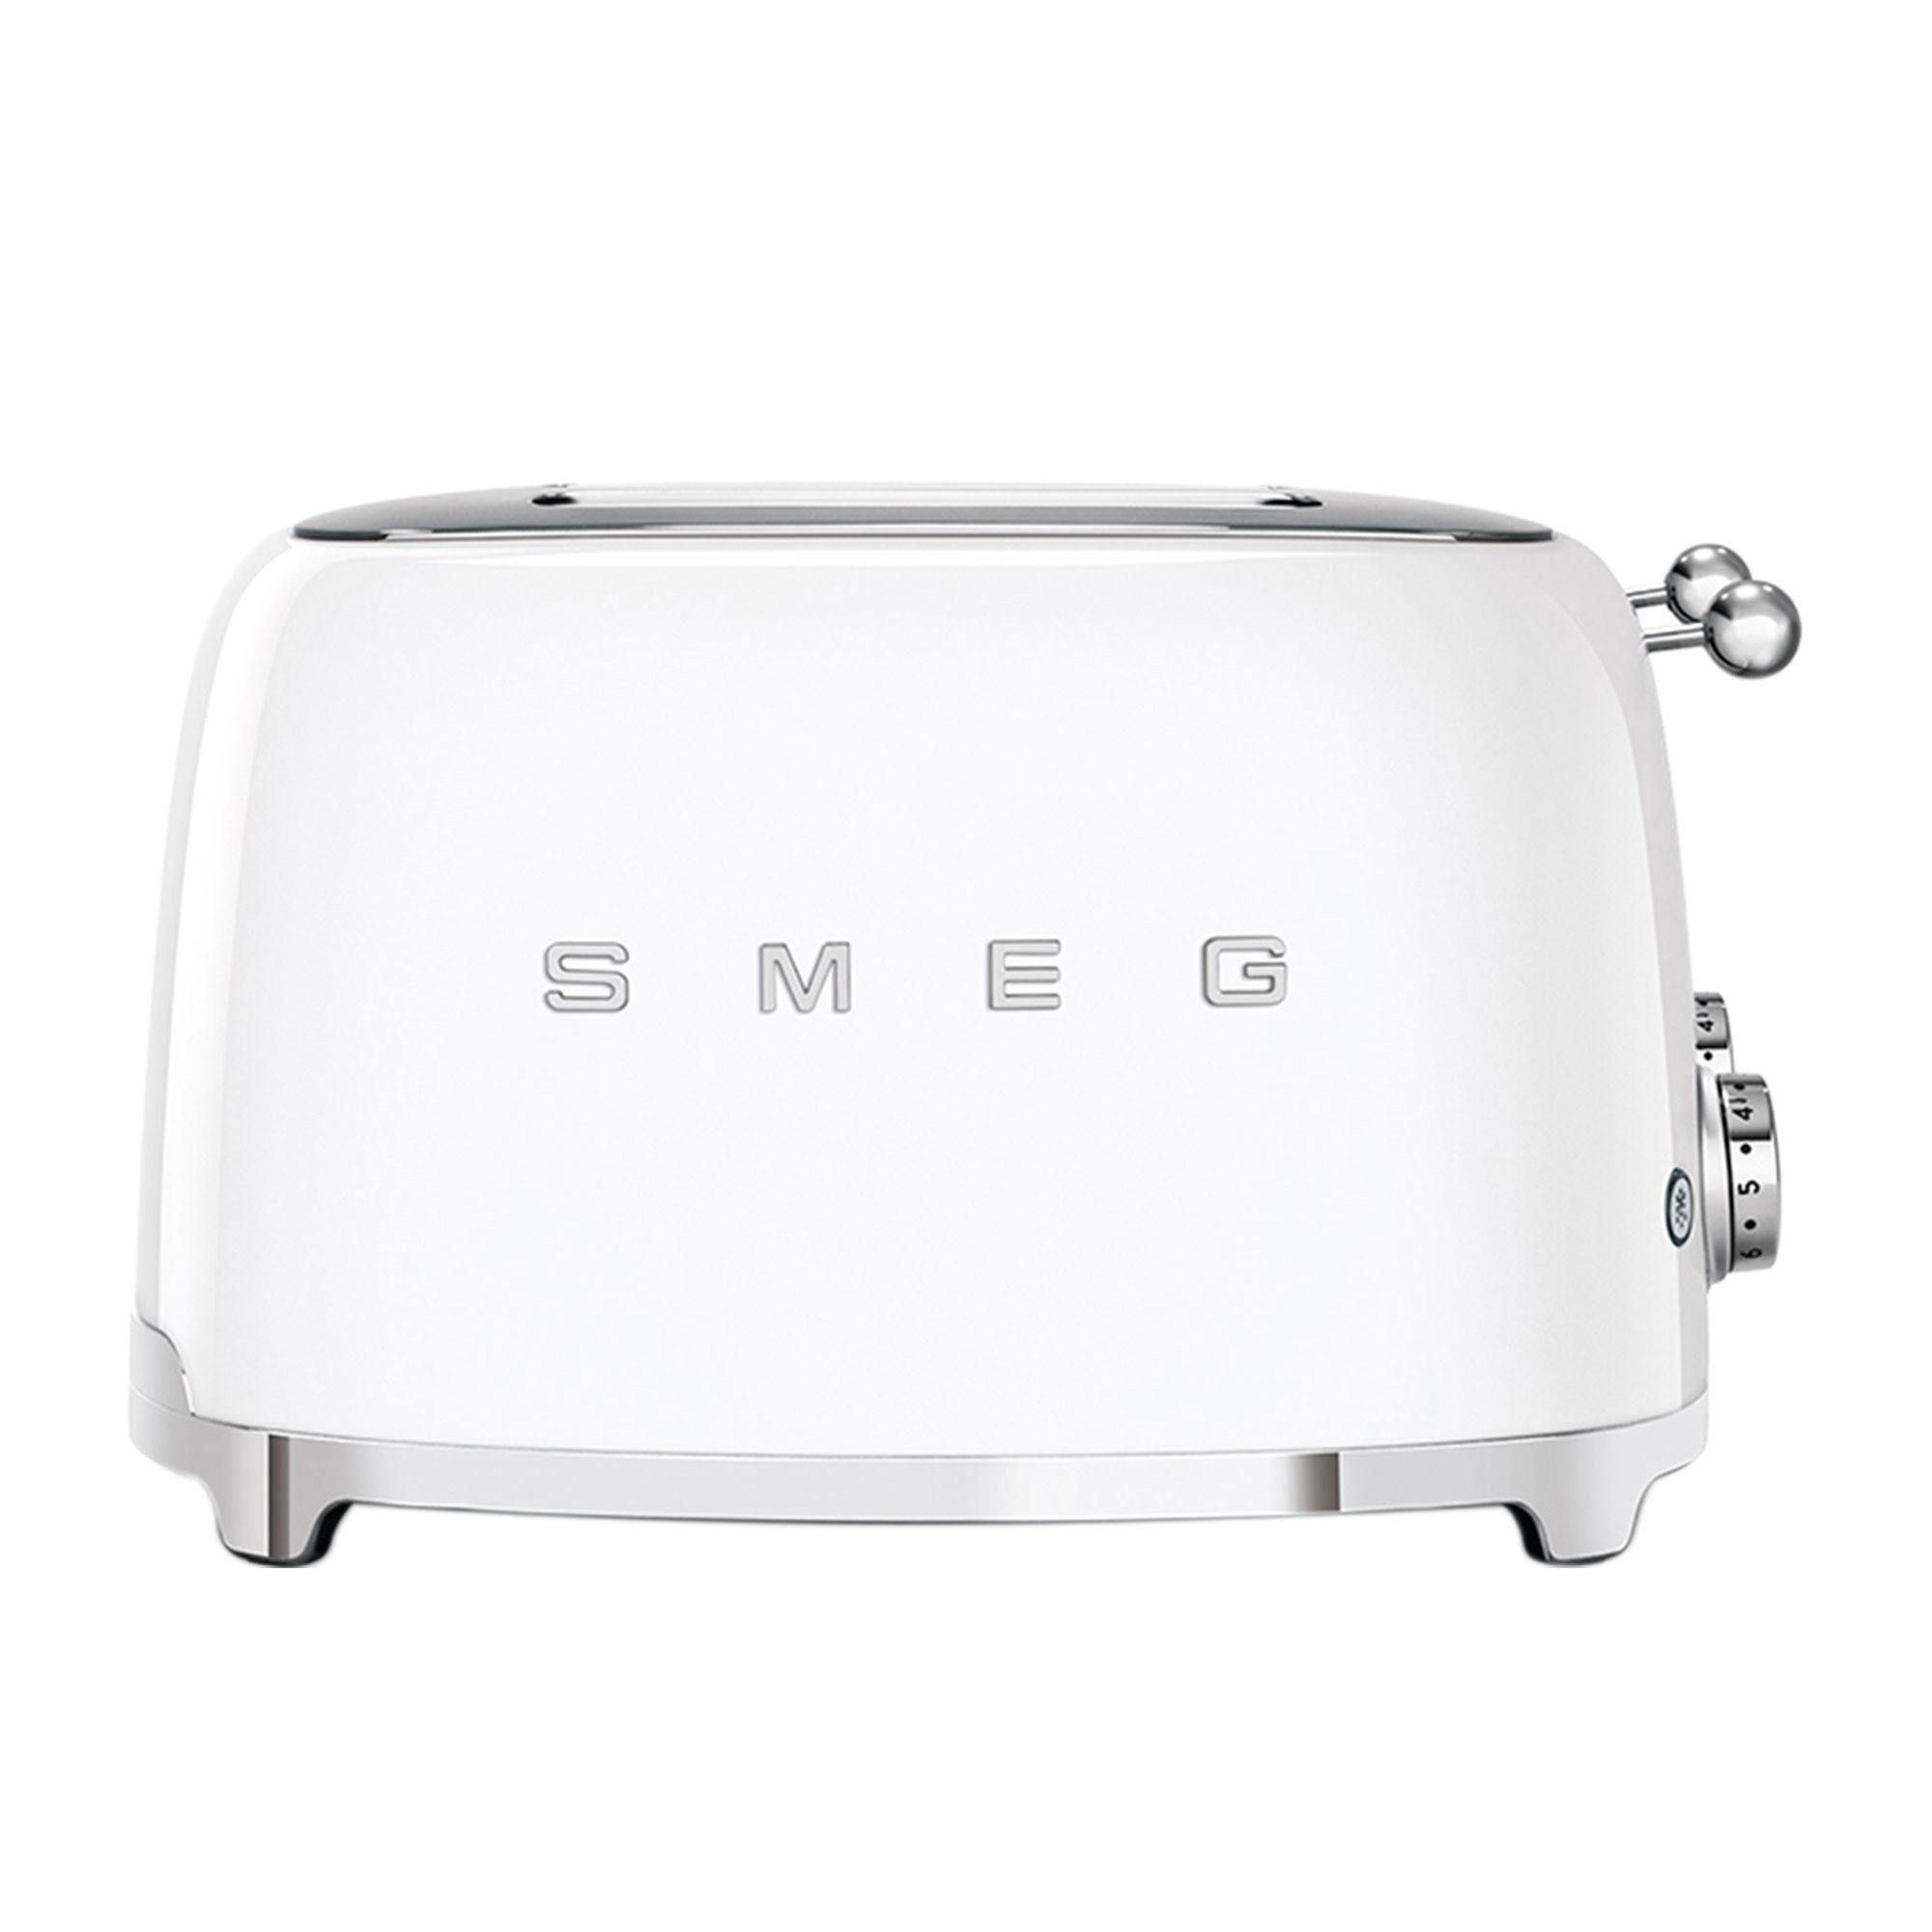 Smeg 50's Retro Style 4 Slot Toaster White Image 5